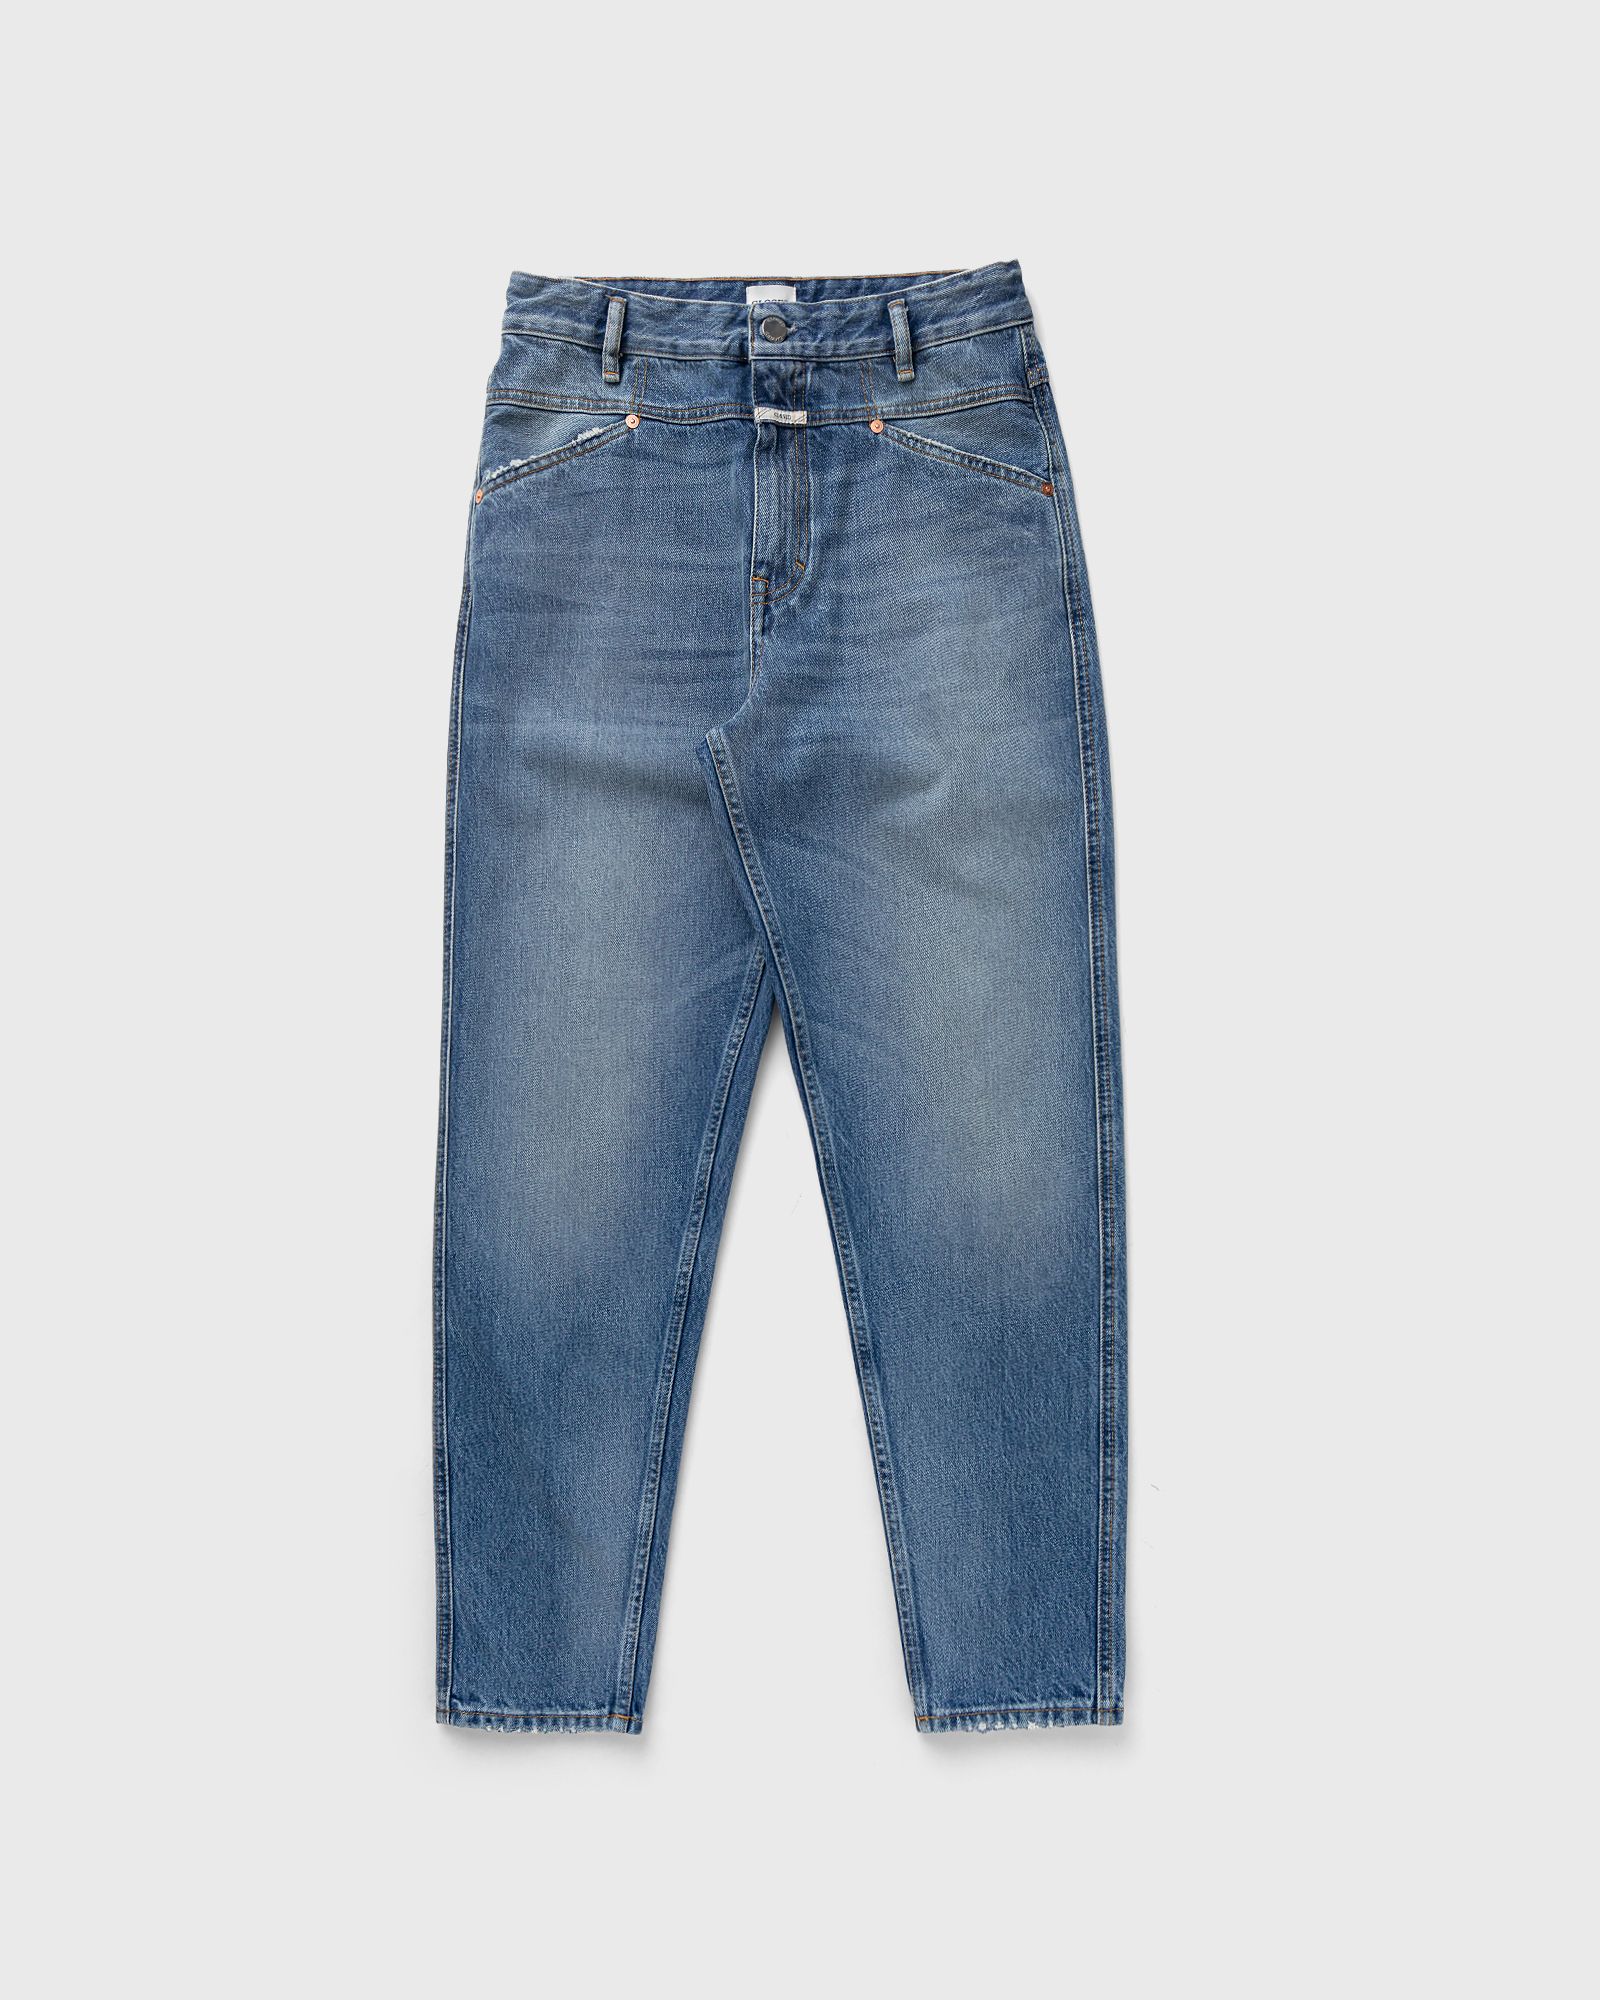 CLOSED - x-lent tapered men jeans blue in größe:l